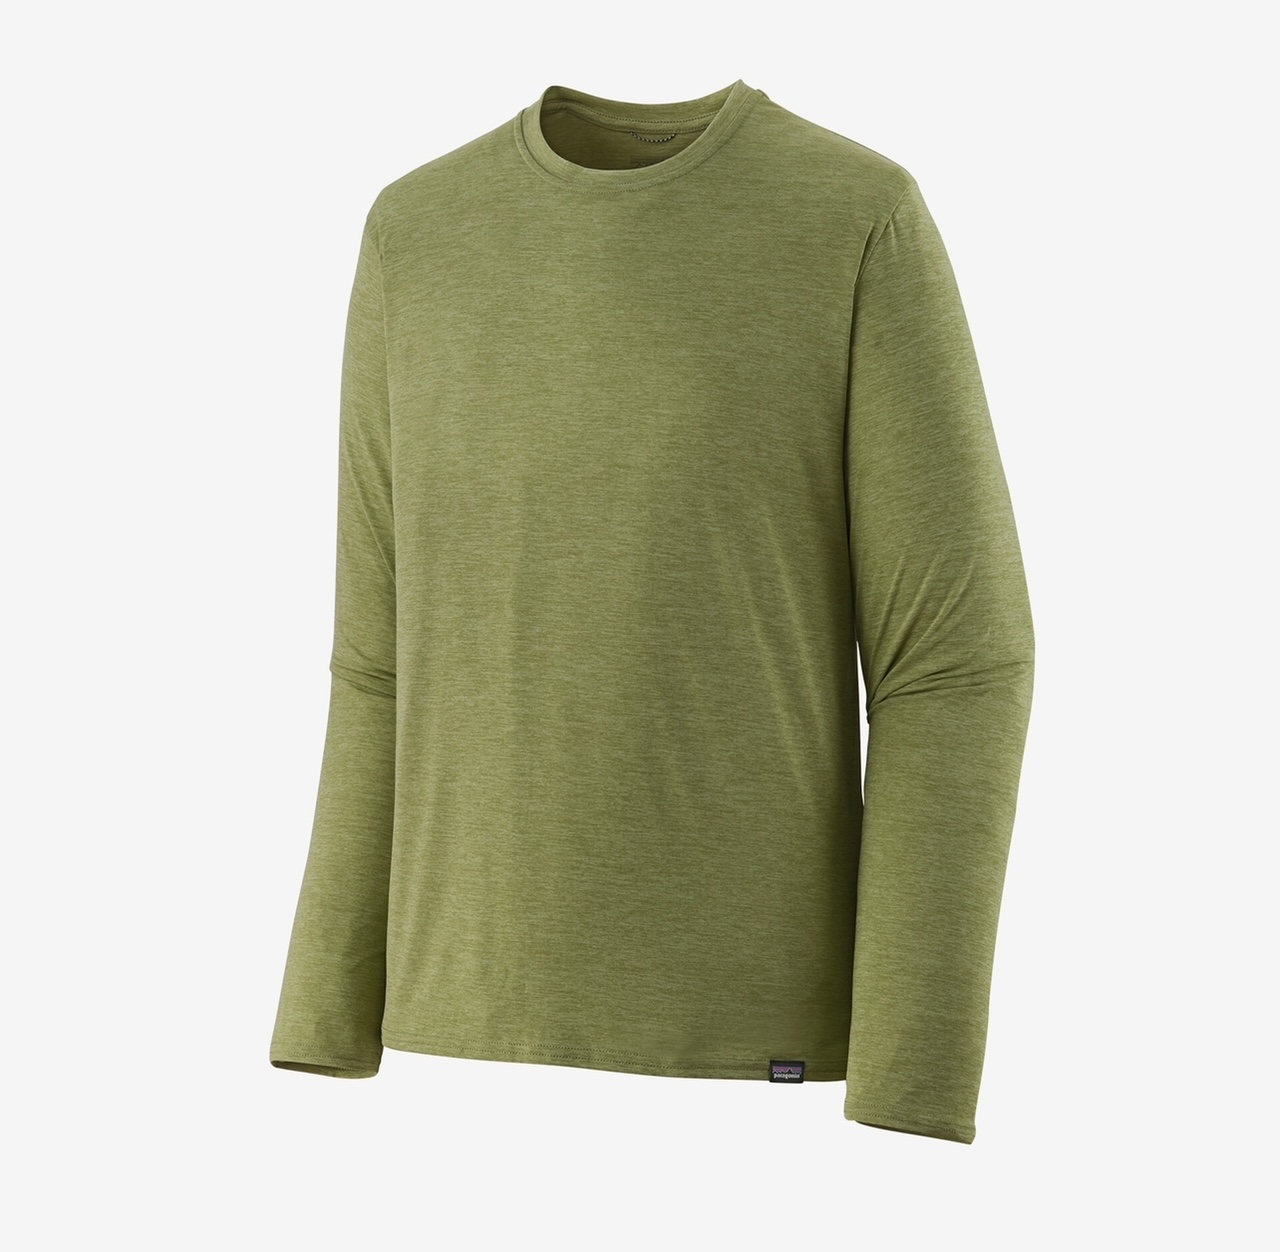 Patagonia M's L/S Capilene Cool Daily Shirt - Buckhorn Green: Light Buckhorn Green X-Dye - XL